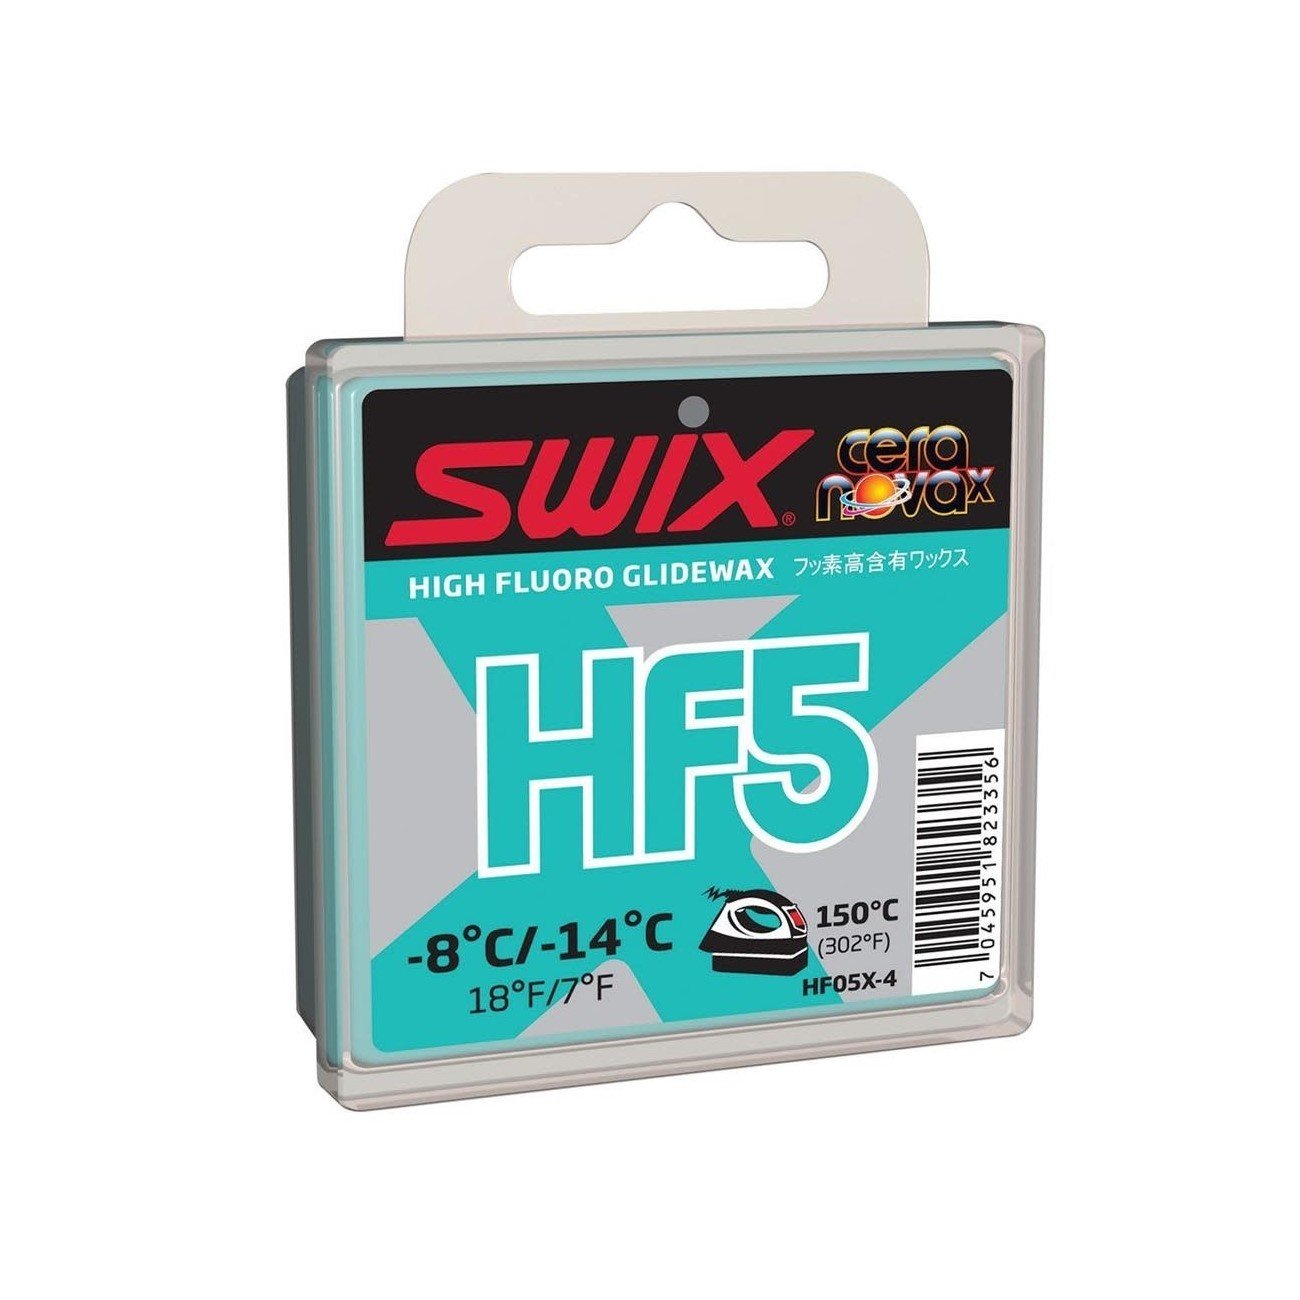 HF5X Turquoise Wax 40g